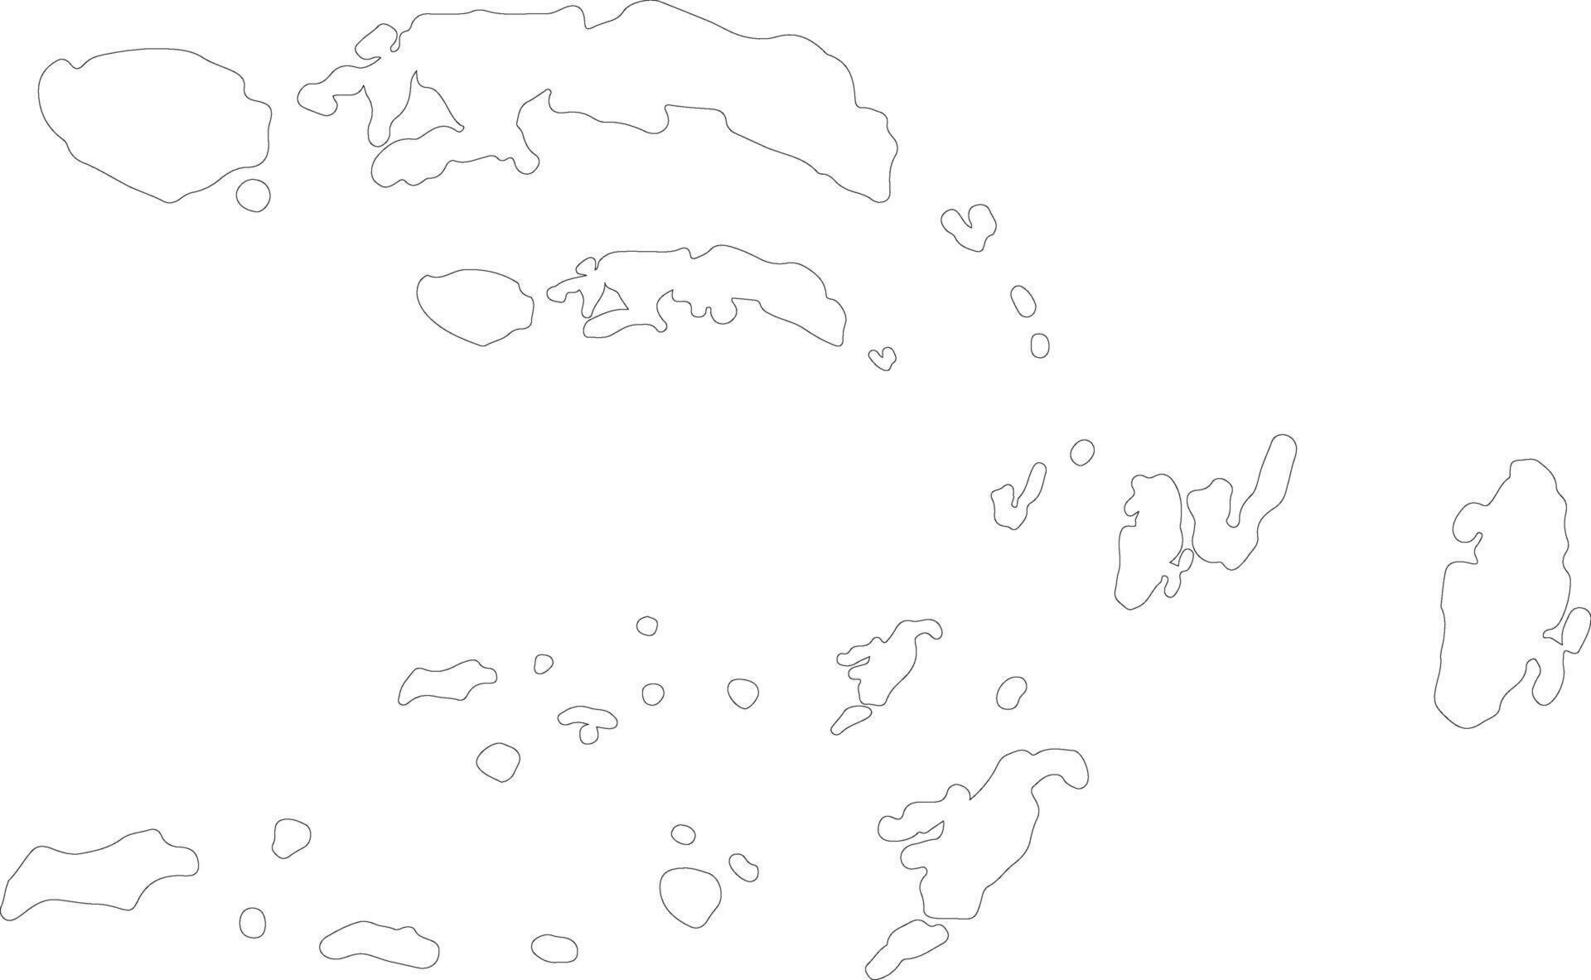 Maluku indonesien översikt Karta vektor